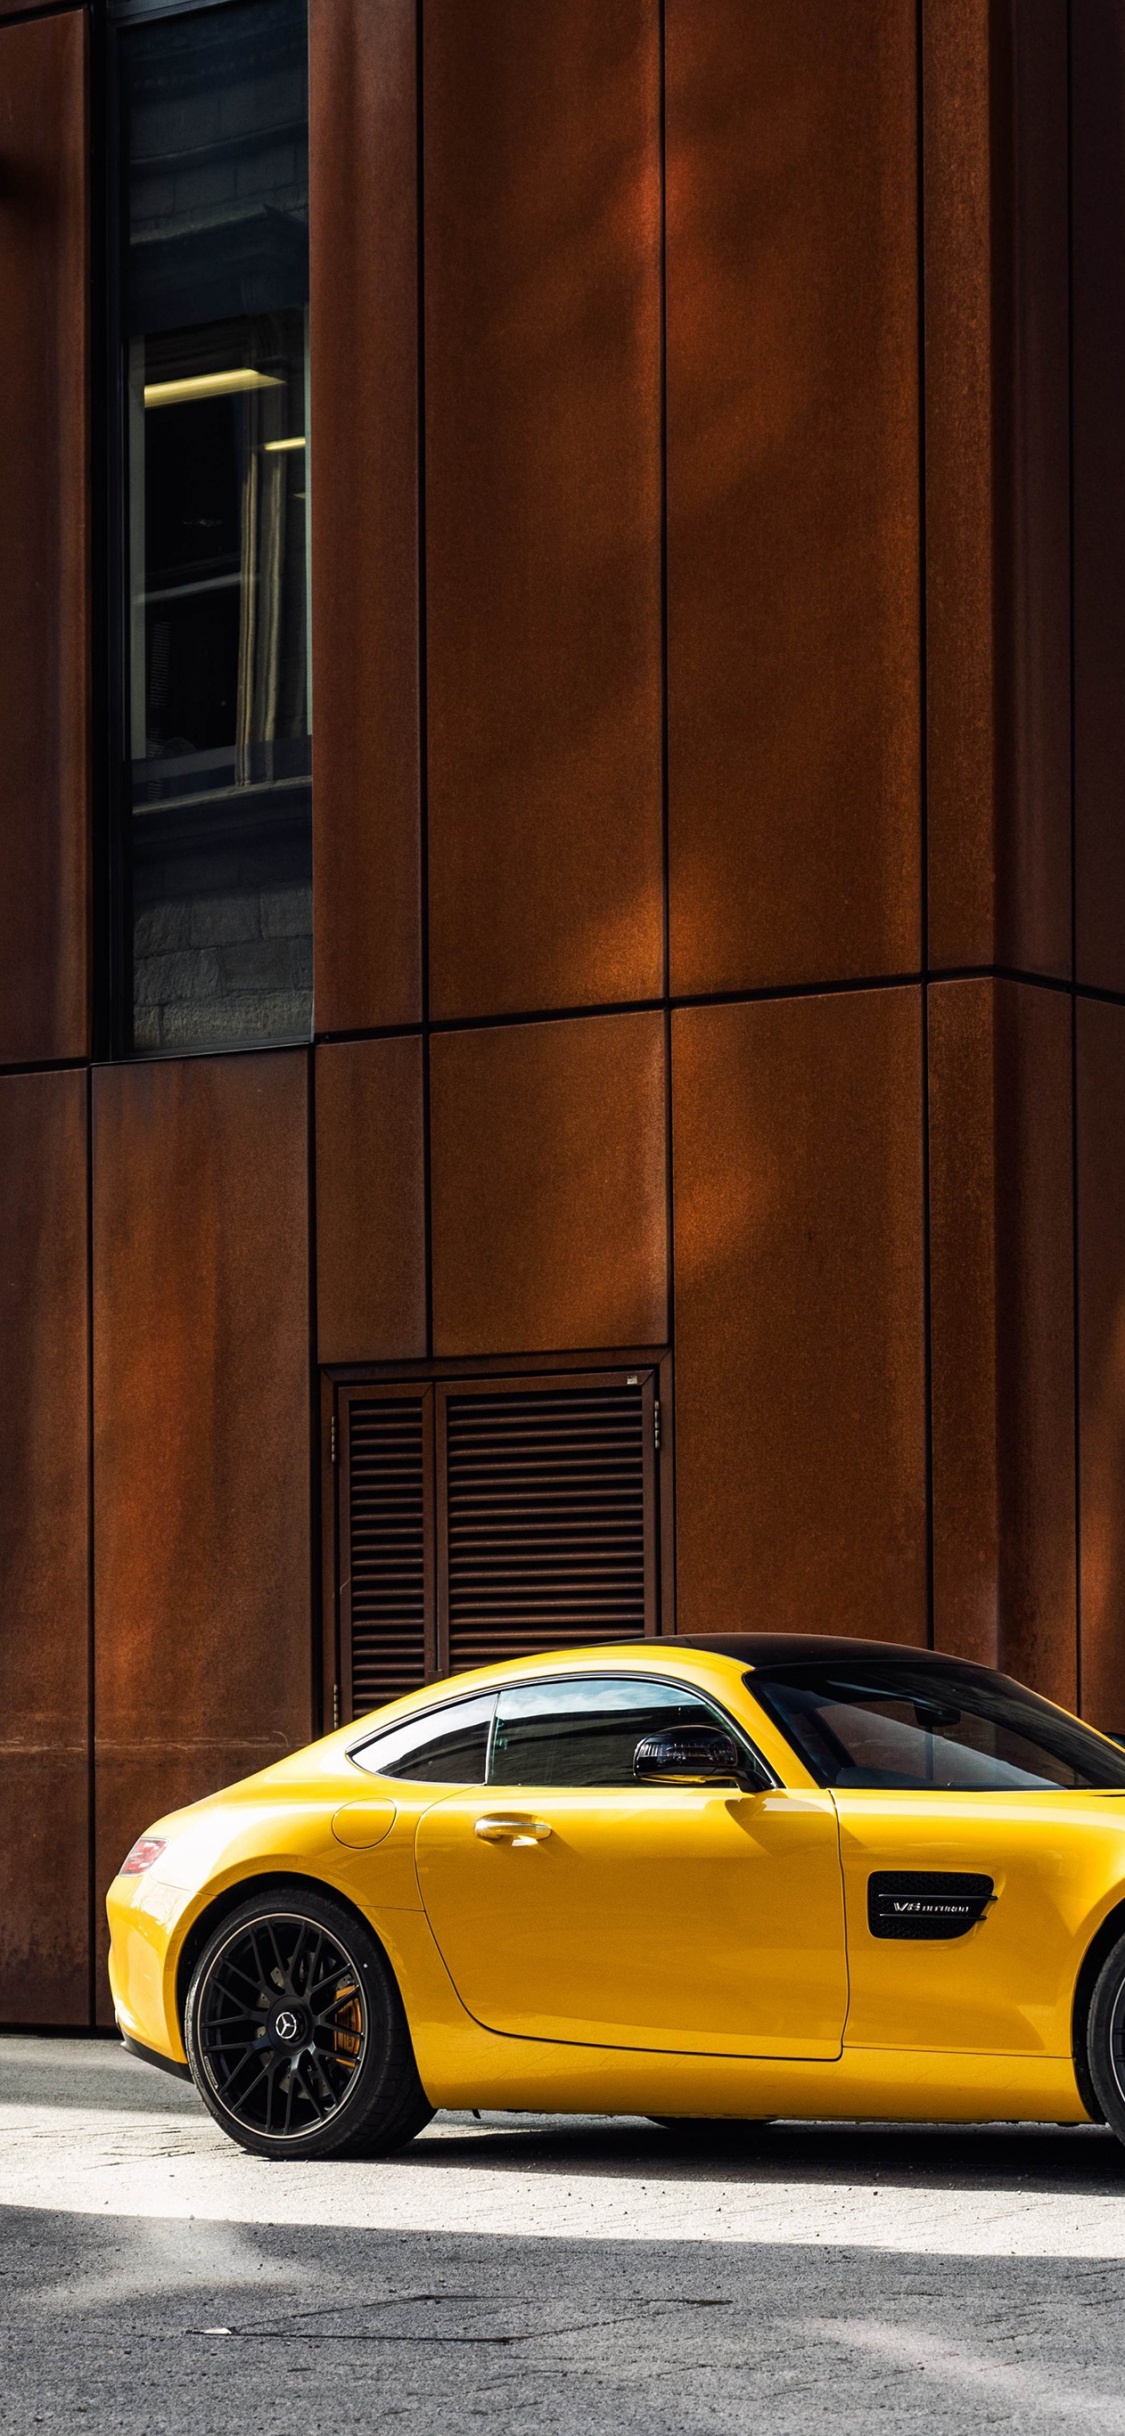 Gelber Porsche 911 Geparkt Neben Braunem Betongebäude Tagsüber. Wallpaper in 1125x2436 Resolution